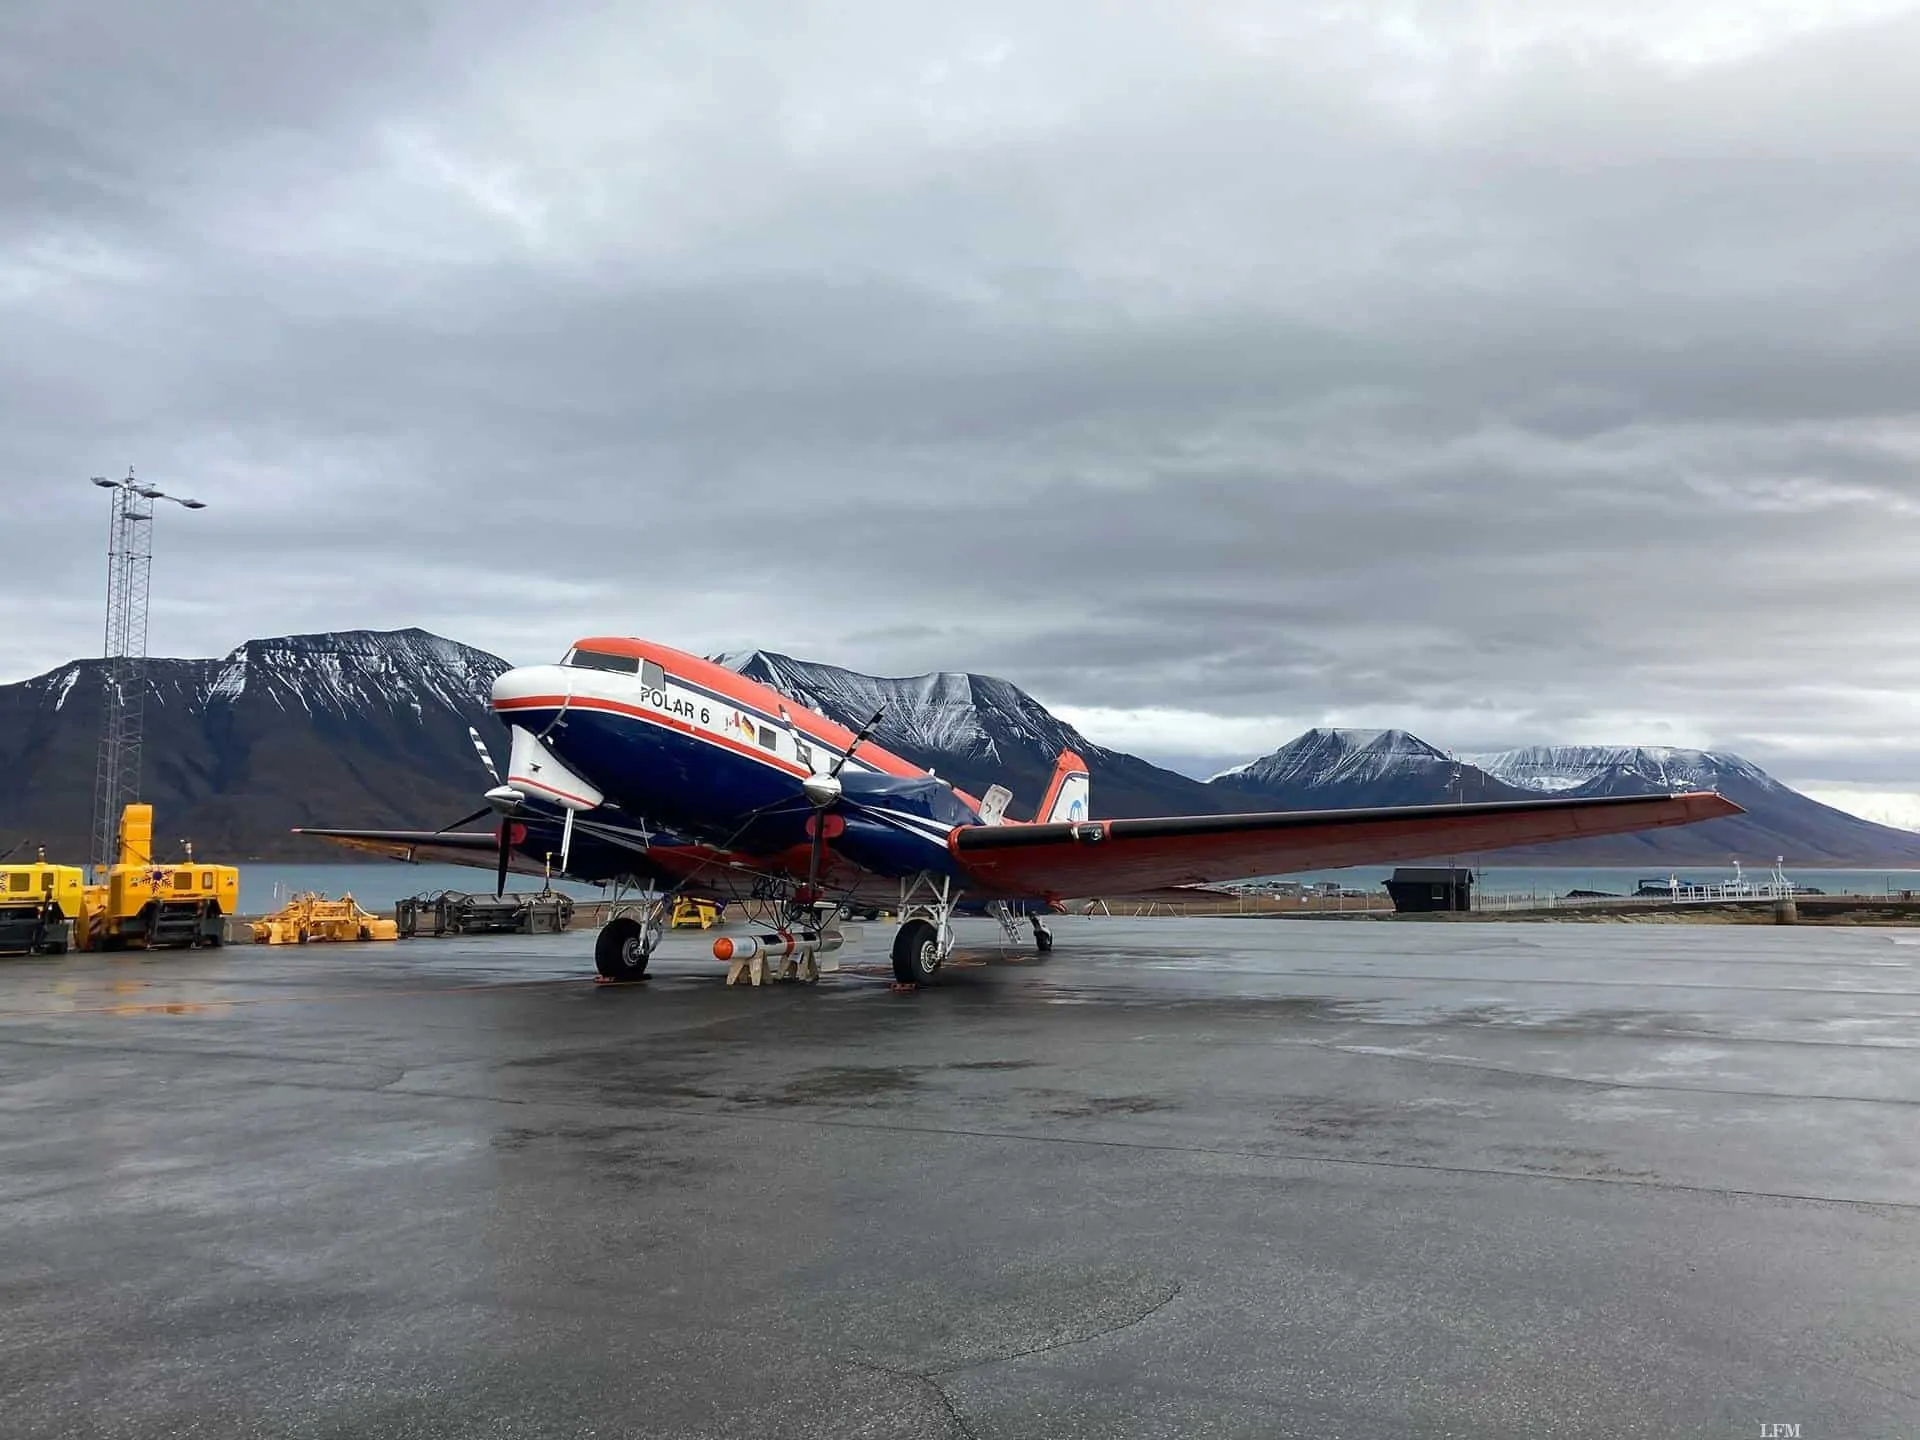 For­schungs­flug­zeug Po­lar 6 am Flug­ha­fen Lon­gyear­by­en, Spitz­ber­gen For­schungs­flug­zeug Po­lar 6 am Flug­ha­fen Lon­gyear­by­en, Spitz­ber­gen